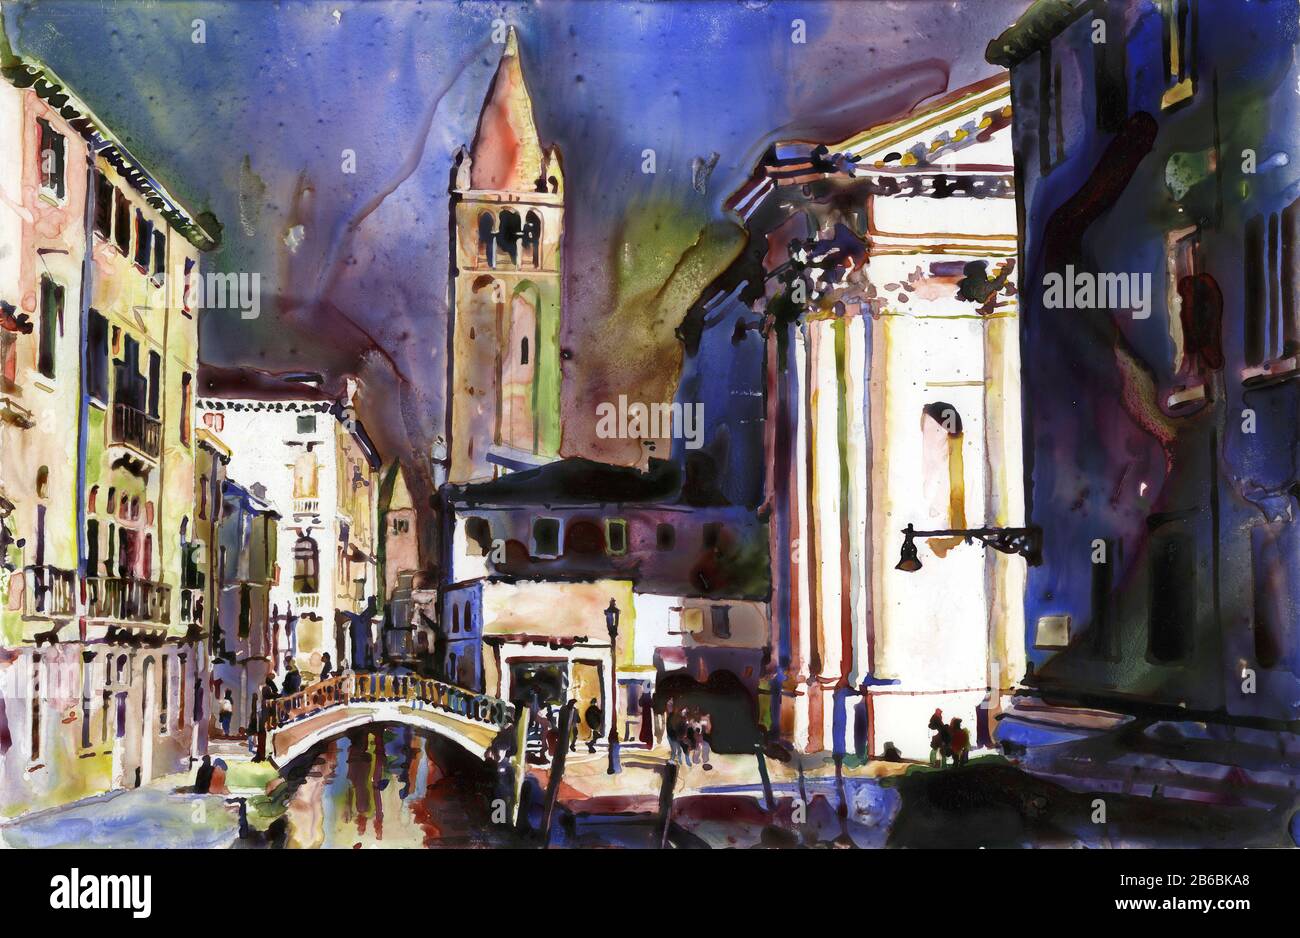 Chiesa di Santa Maria del Soccorso et canaux de Venise médiévale, Italie. Peinture aux aquarelles de Venise imprimé beaux-arts Banque D'Images